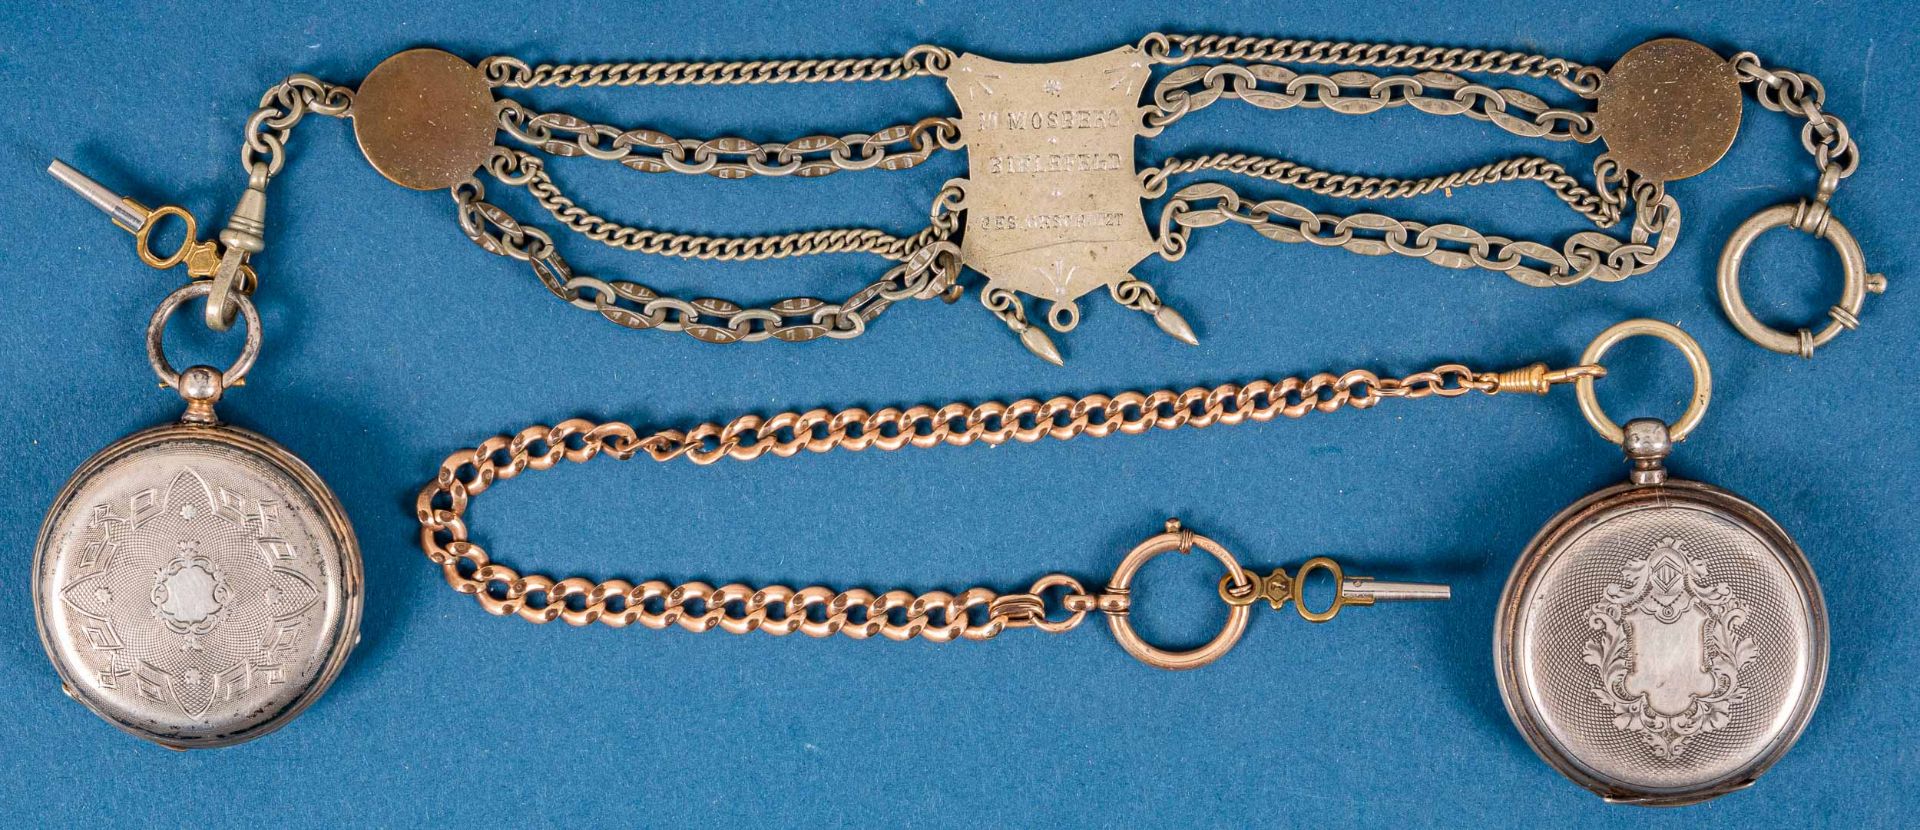 2 antike Taschenuhren mit Schlüsselaufzug, 1 Gehäuse in Silber, beide um 1900, - Bild 7 aus 21